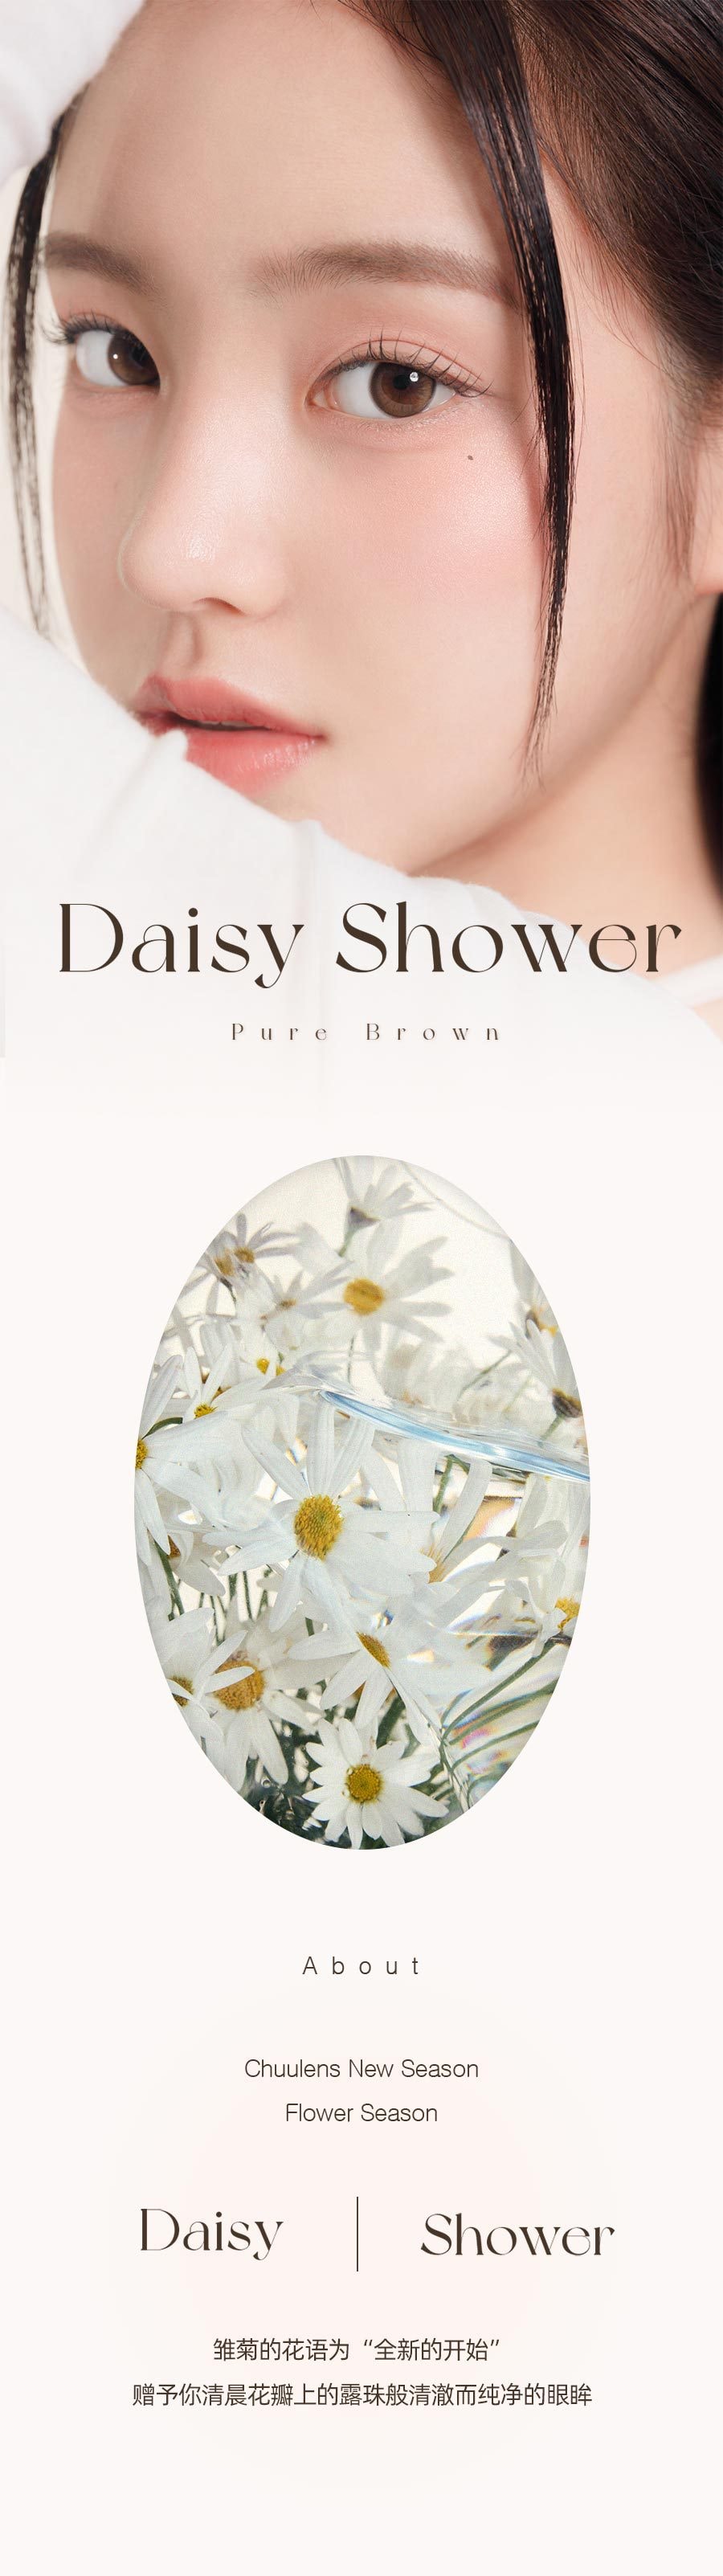 韩国 chuulens 月抛 Daisy Shower Pure Brown13.3mm 2片装 0度